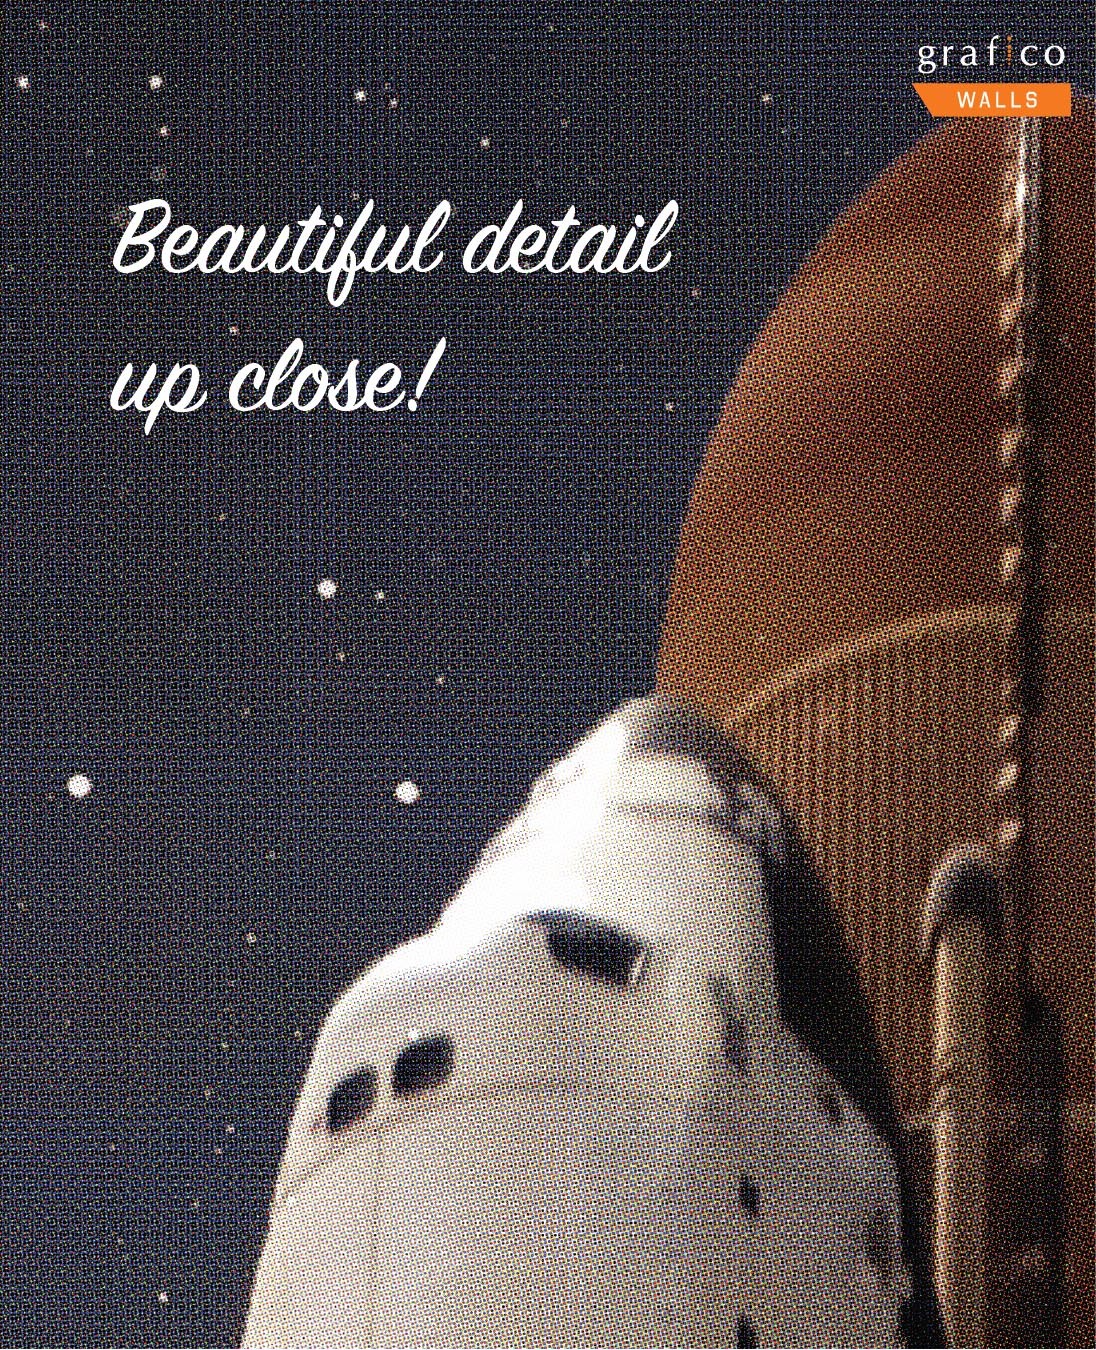 Galaxy Shuttle Wallpaper | Grafico Melbourne